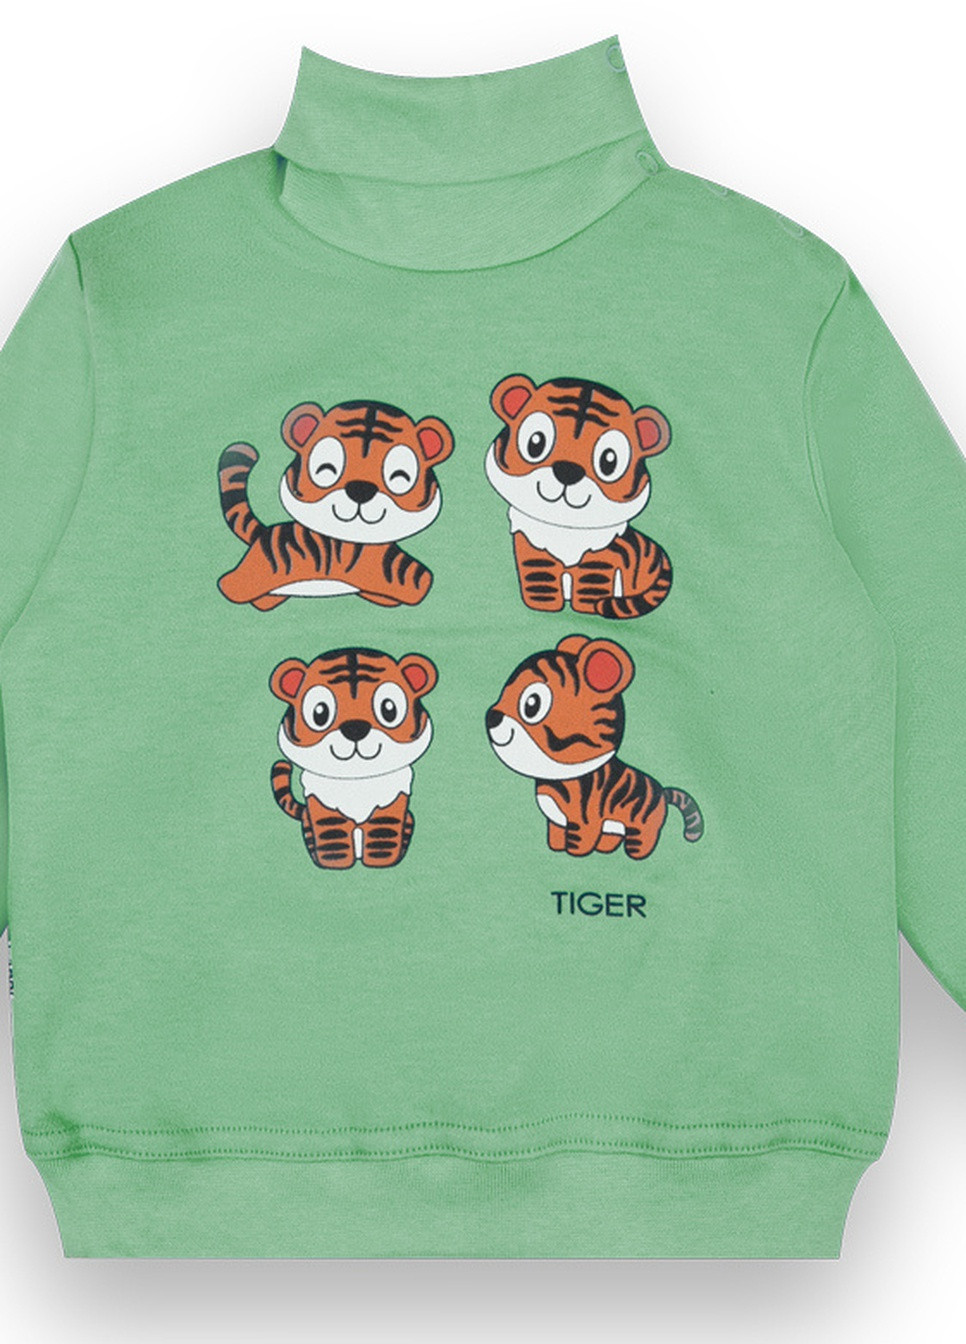 Зеленый демисезонный детский свитер для мальчика sv-21-45-1 *tiger* Габби